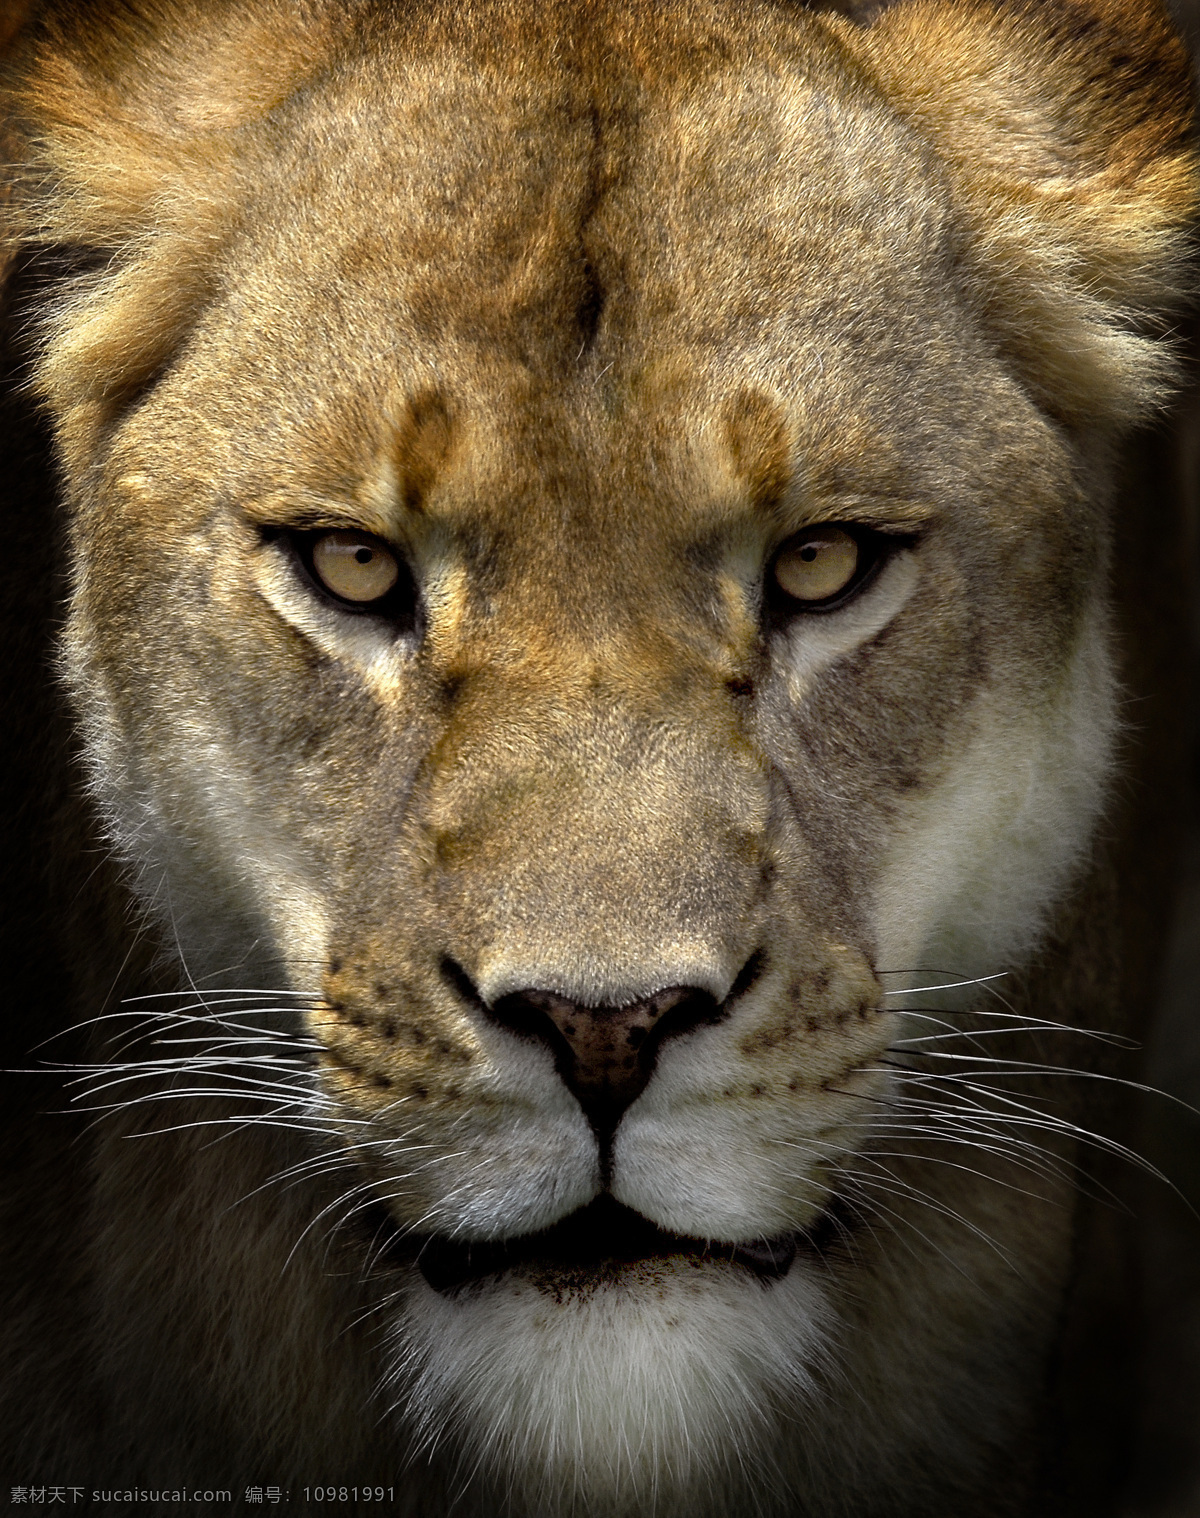 雌狮头部高清 狮子 雌狮 凶猛 头部 哺乳动物 犬科动物 动物世界 生物 摄影图 高清图片 陆地动物 生物世界 黑色